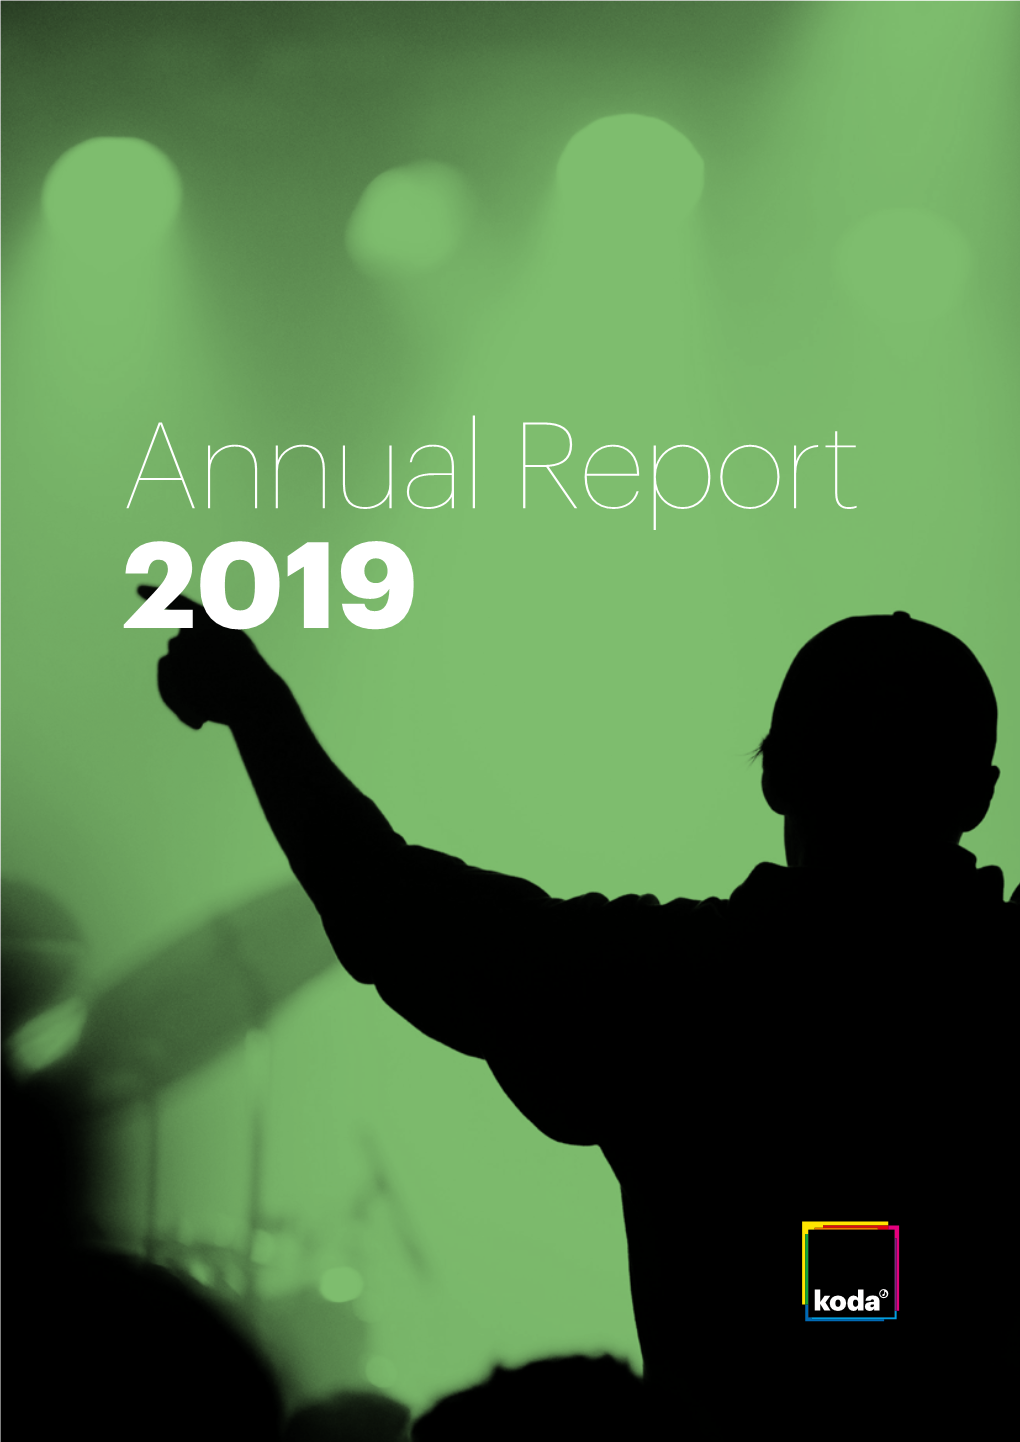 Annual Report 2019 ANNUAL REPORT 2019 ANNUAL REPORT 2019